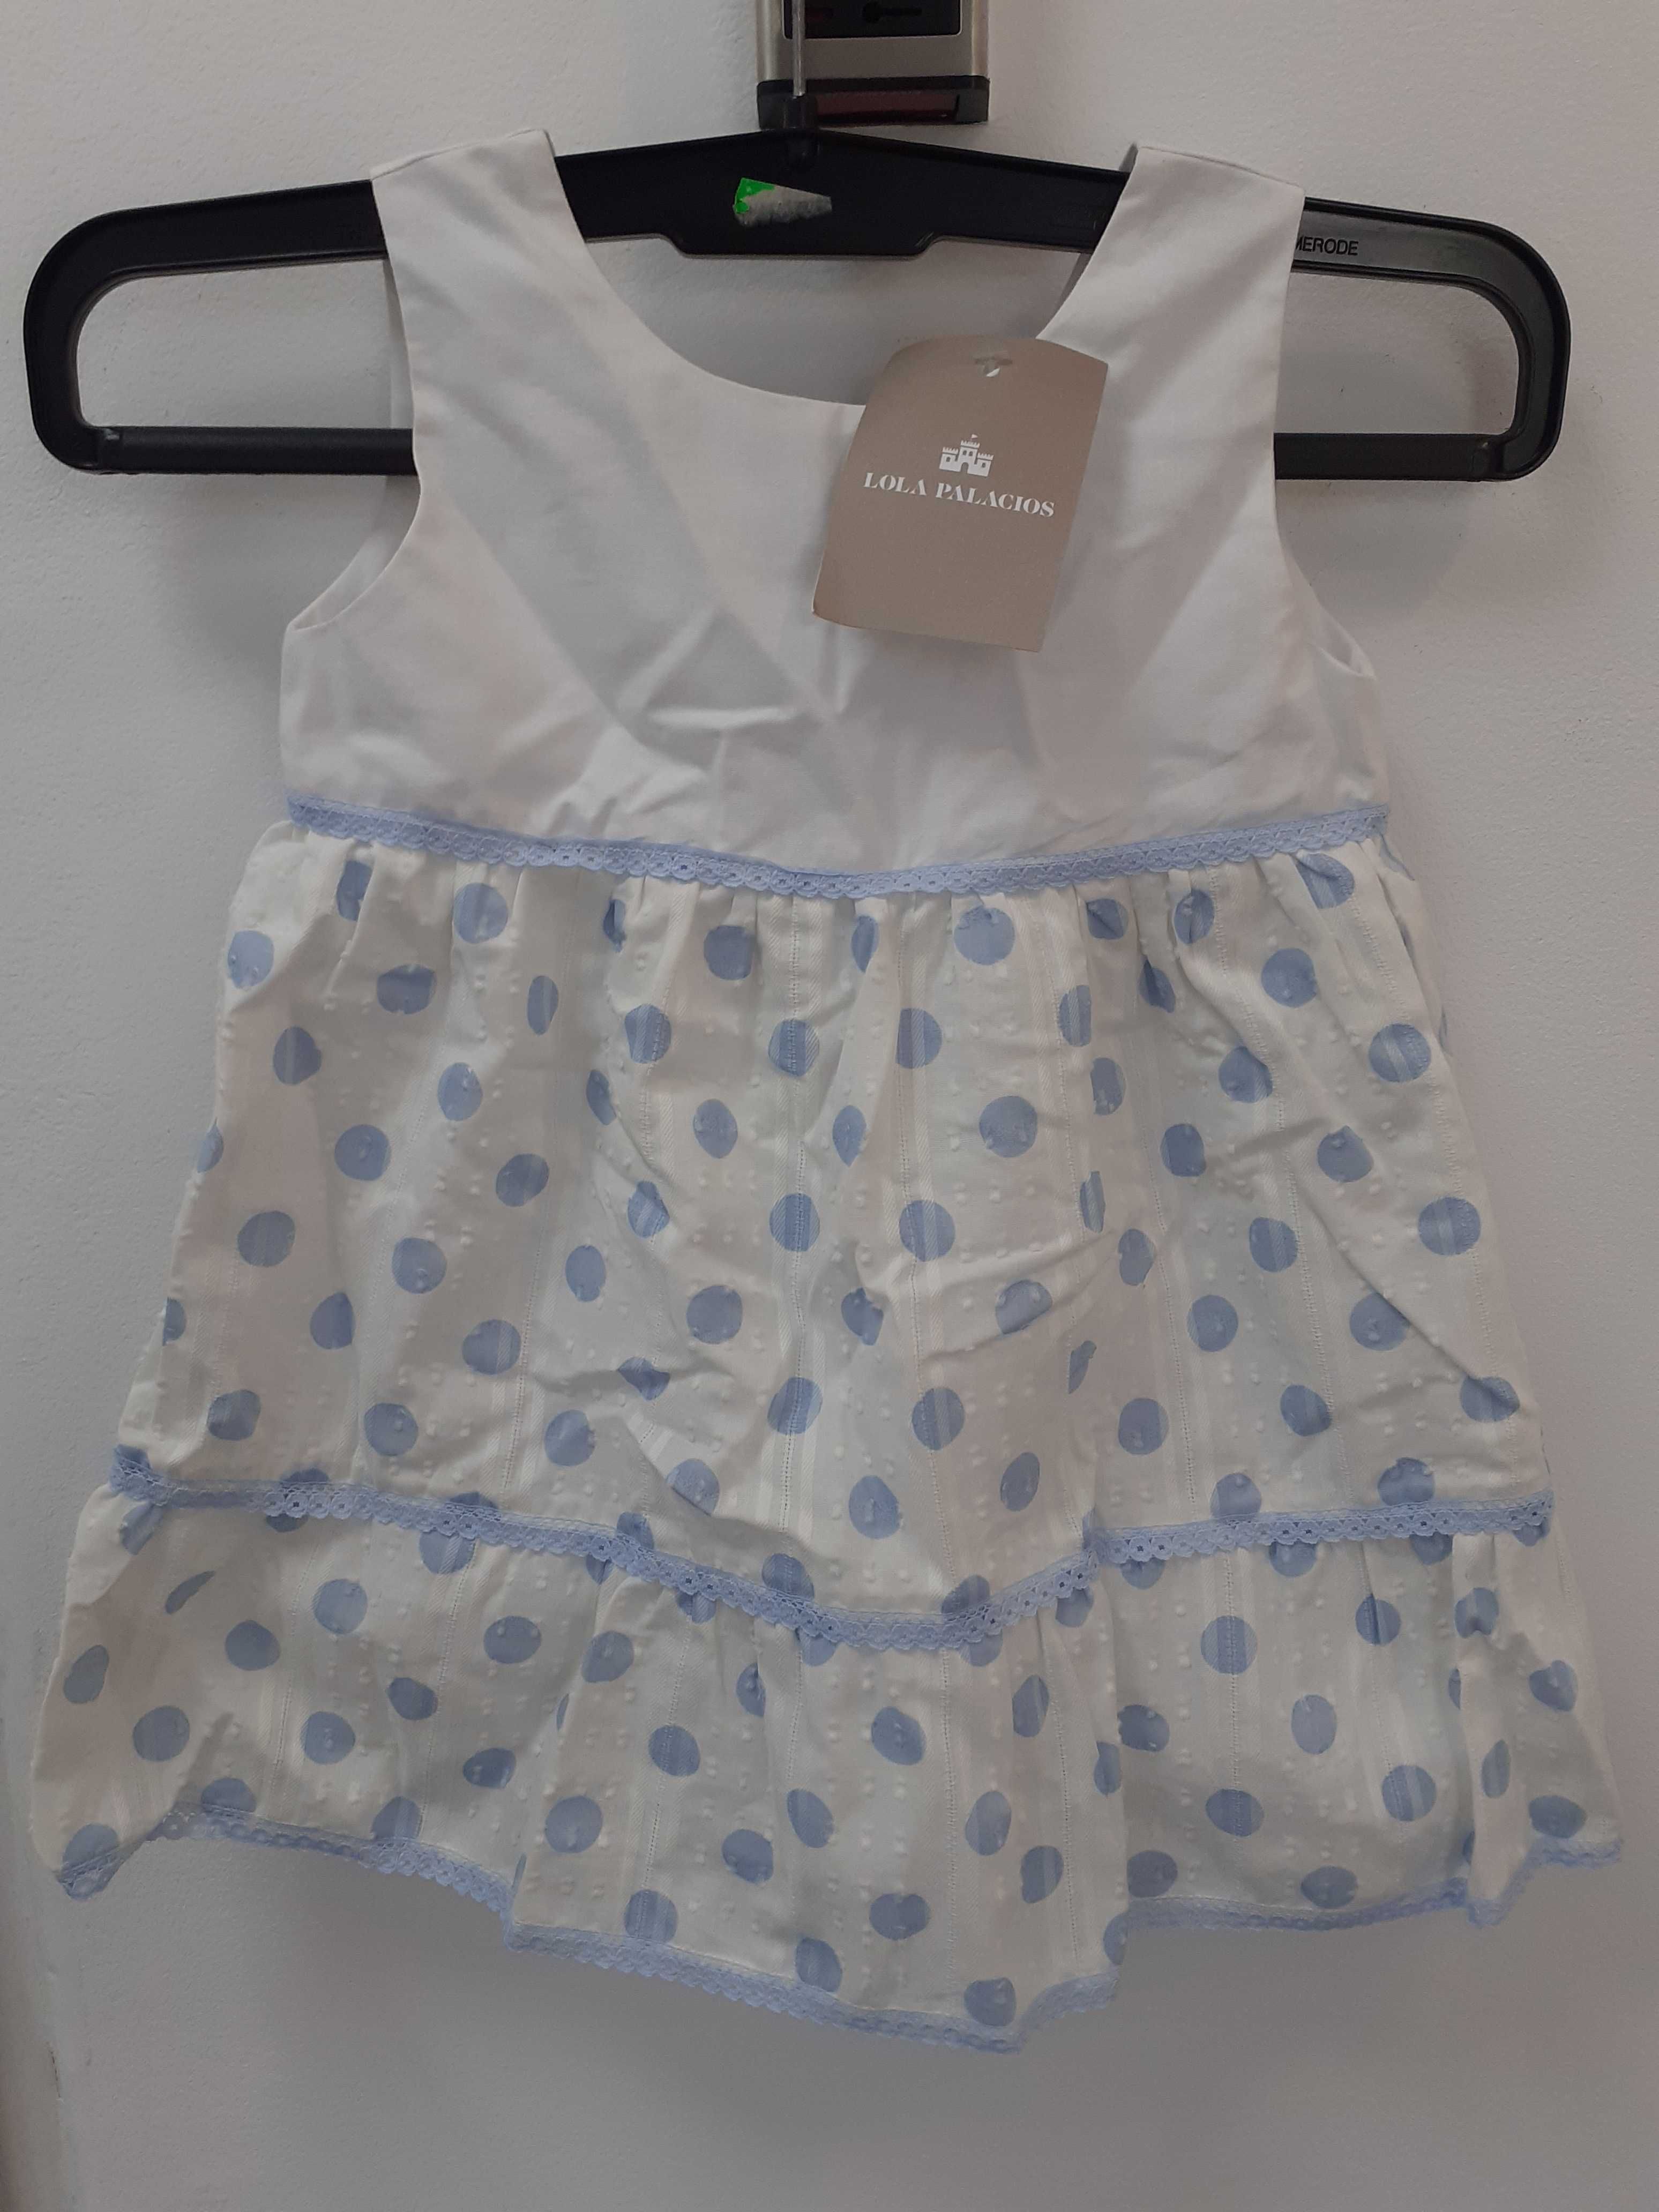 Vand rochie pentru fetita varsta 2 ani,firma lola palacios spania